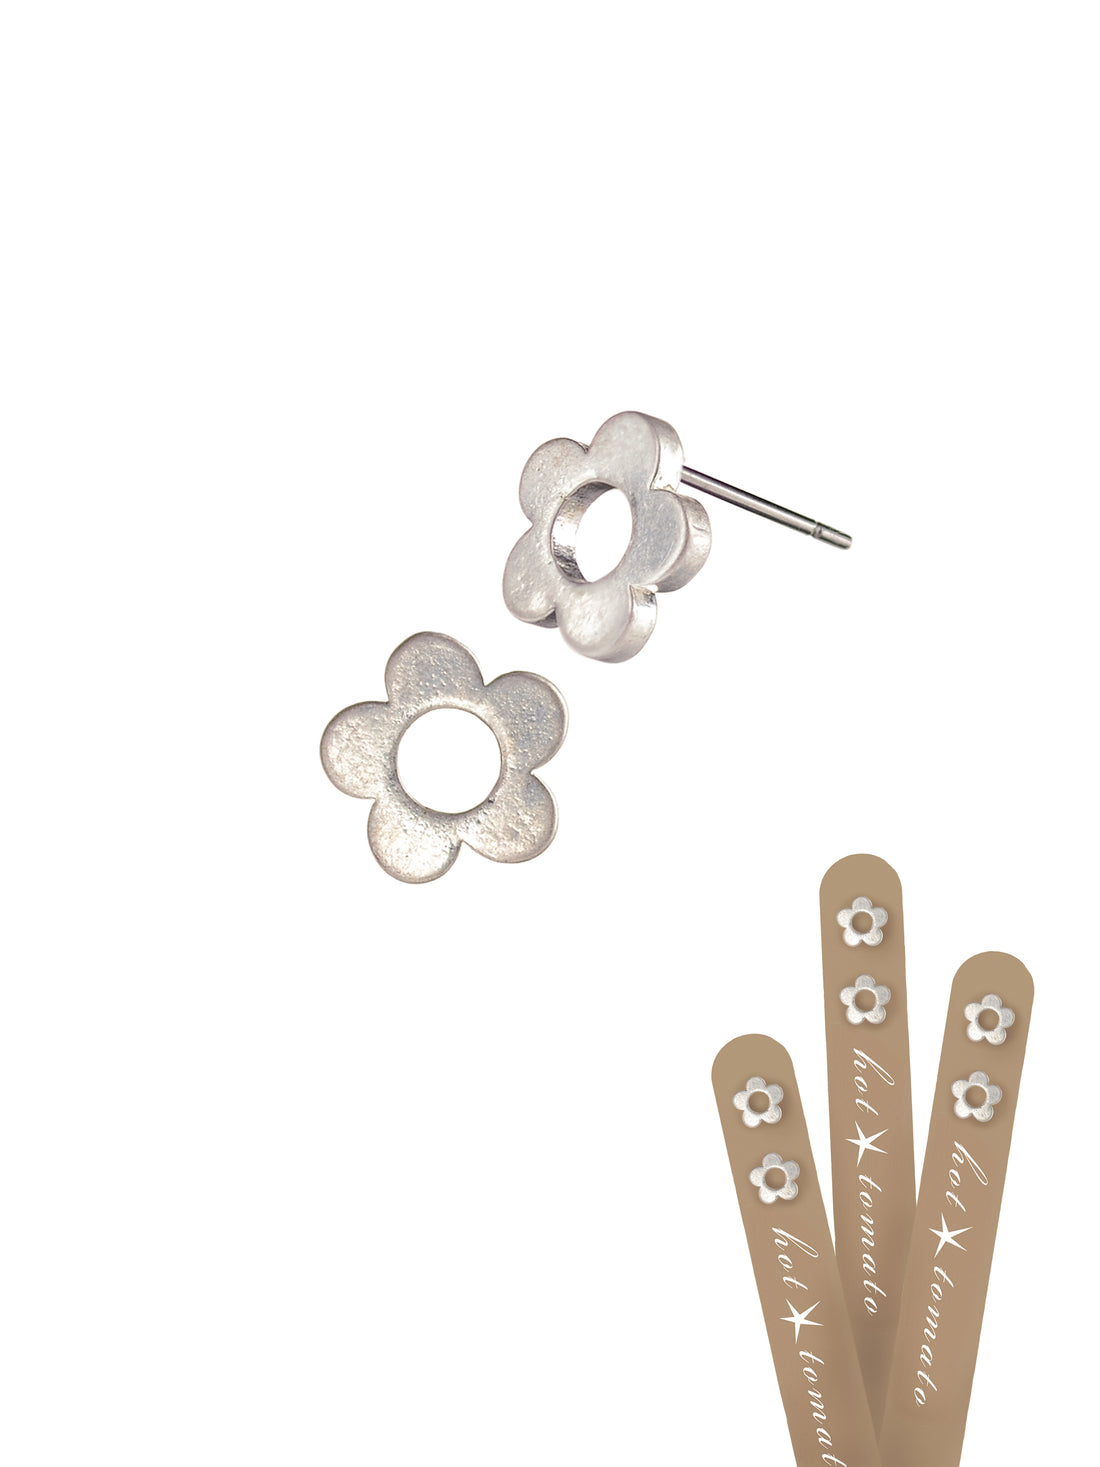 Flower Stud Lollipop Earrings in a Worn Silver Finish - LF804